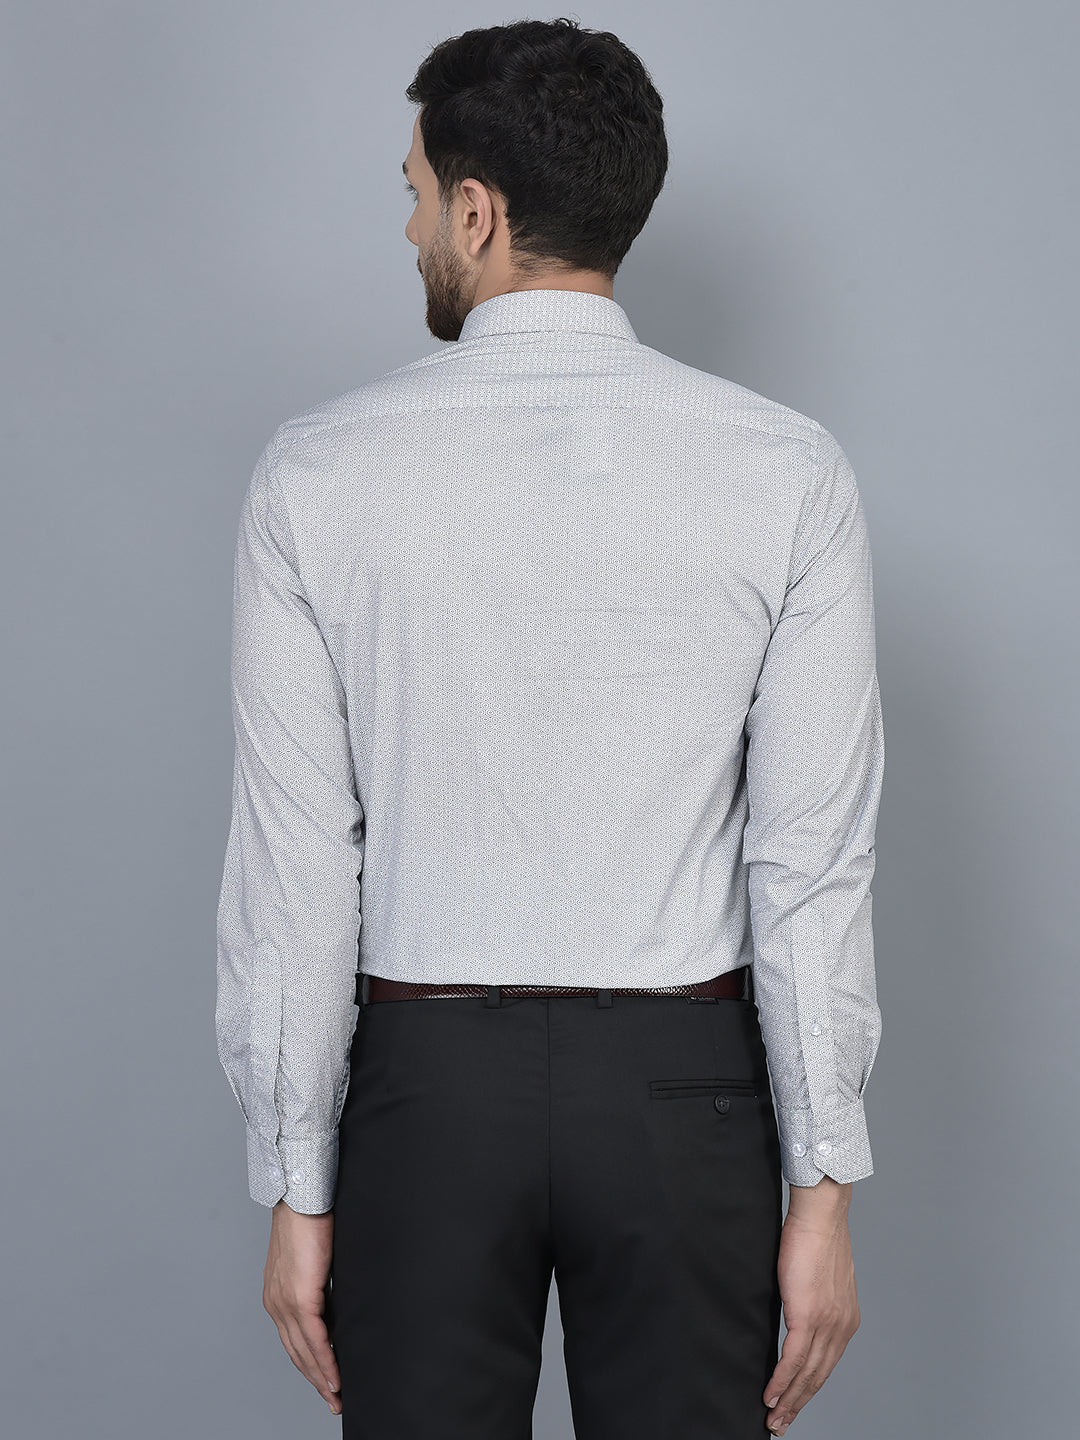 Cobb Grey Printed Slim Fit Formal Shirt